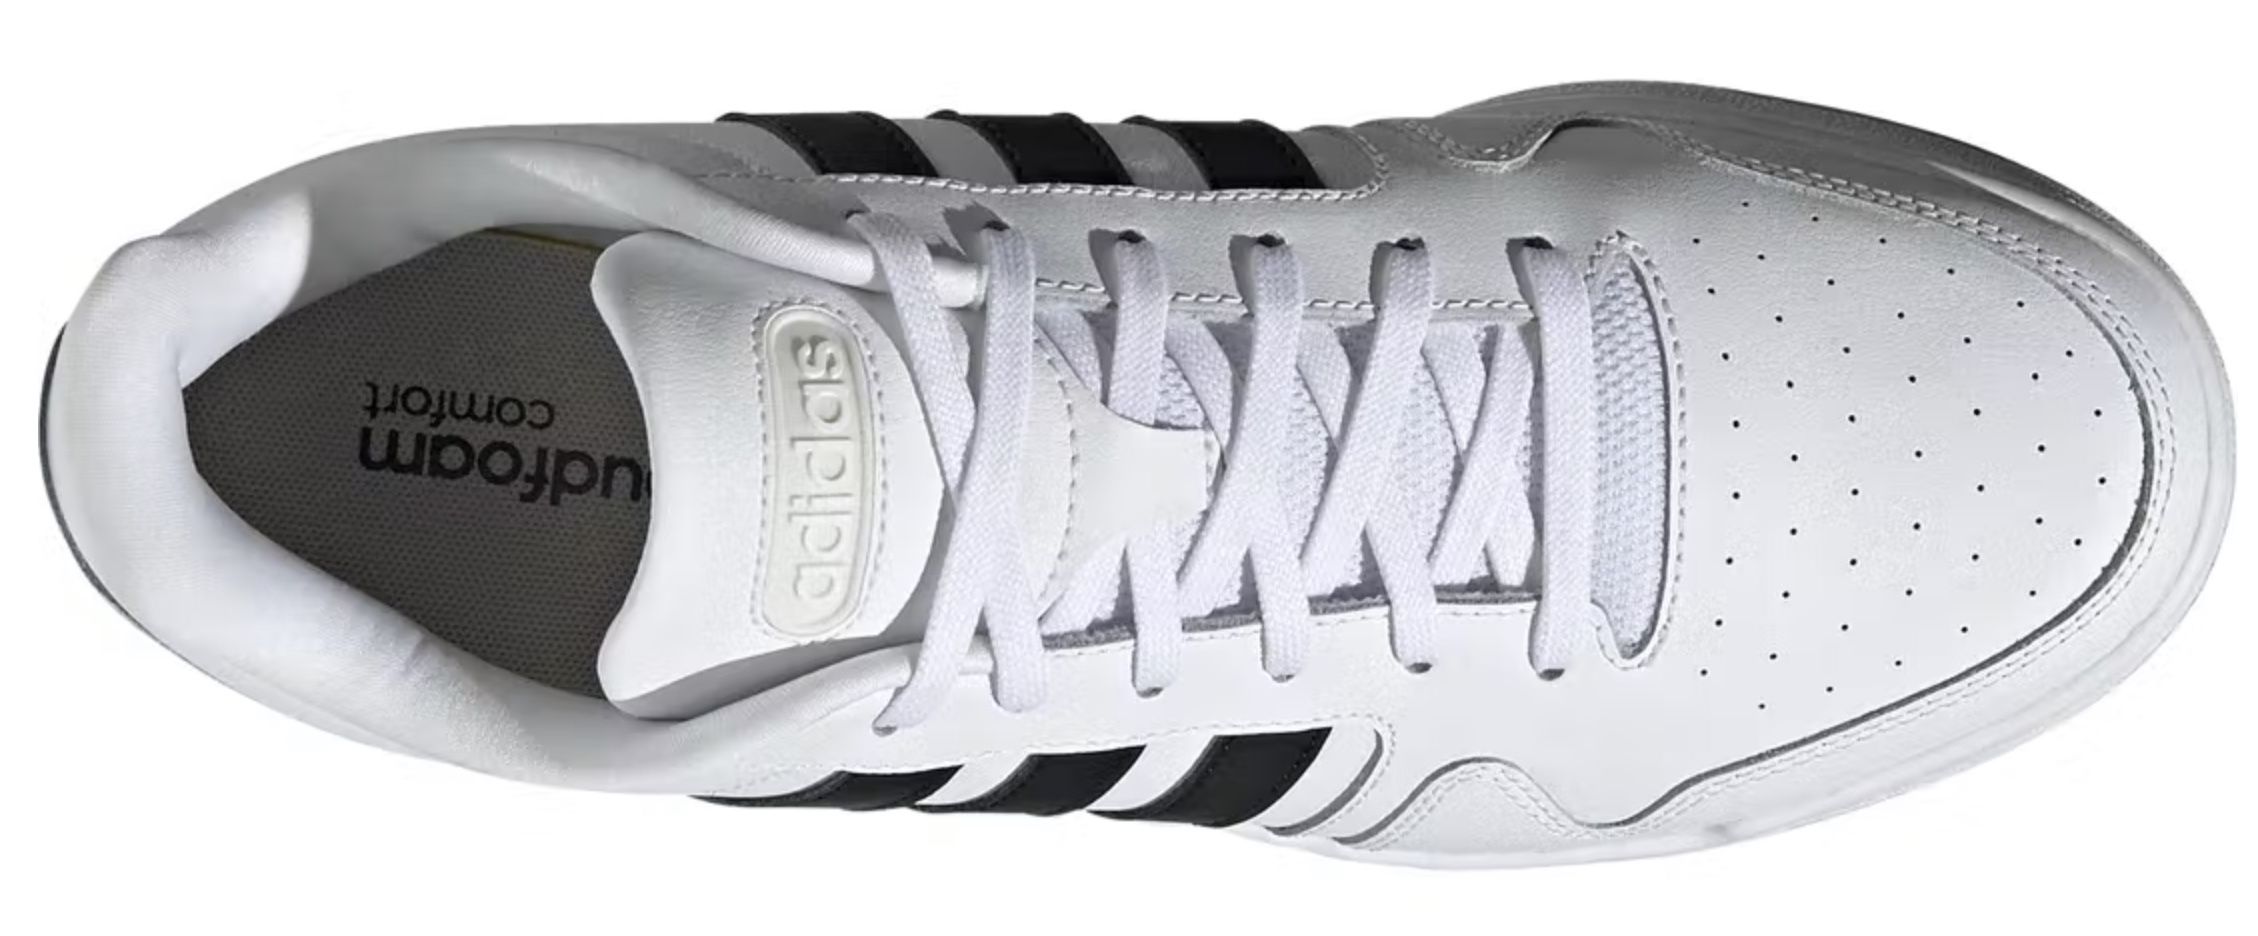 adidas Postmove Unisex Sneaker für 31,98€ (statt 48€)   nur in 42 46